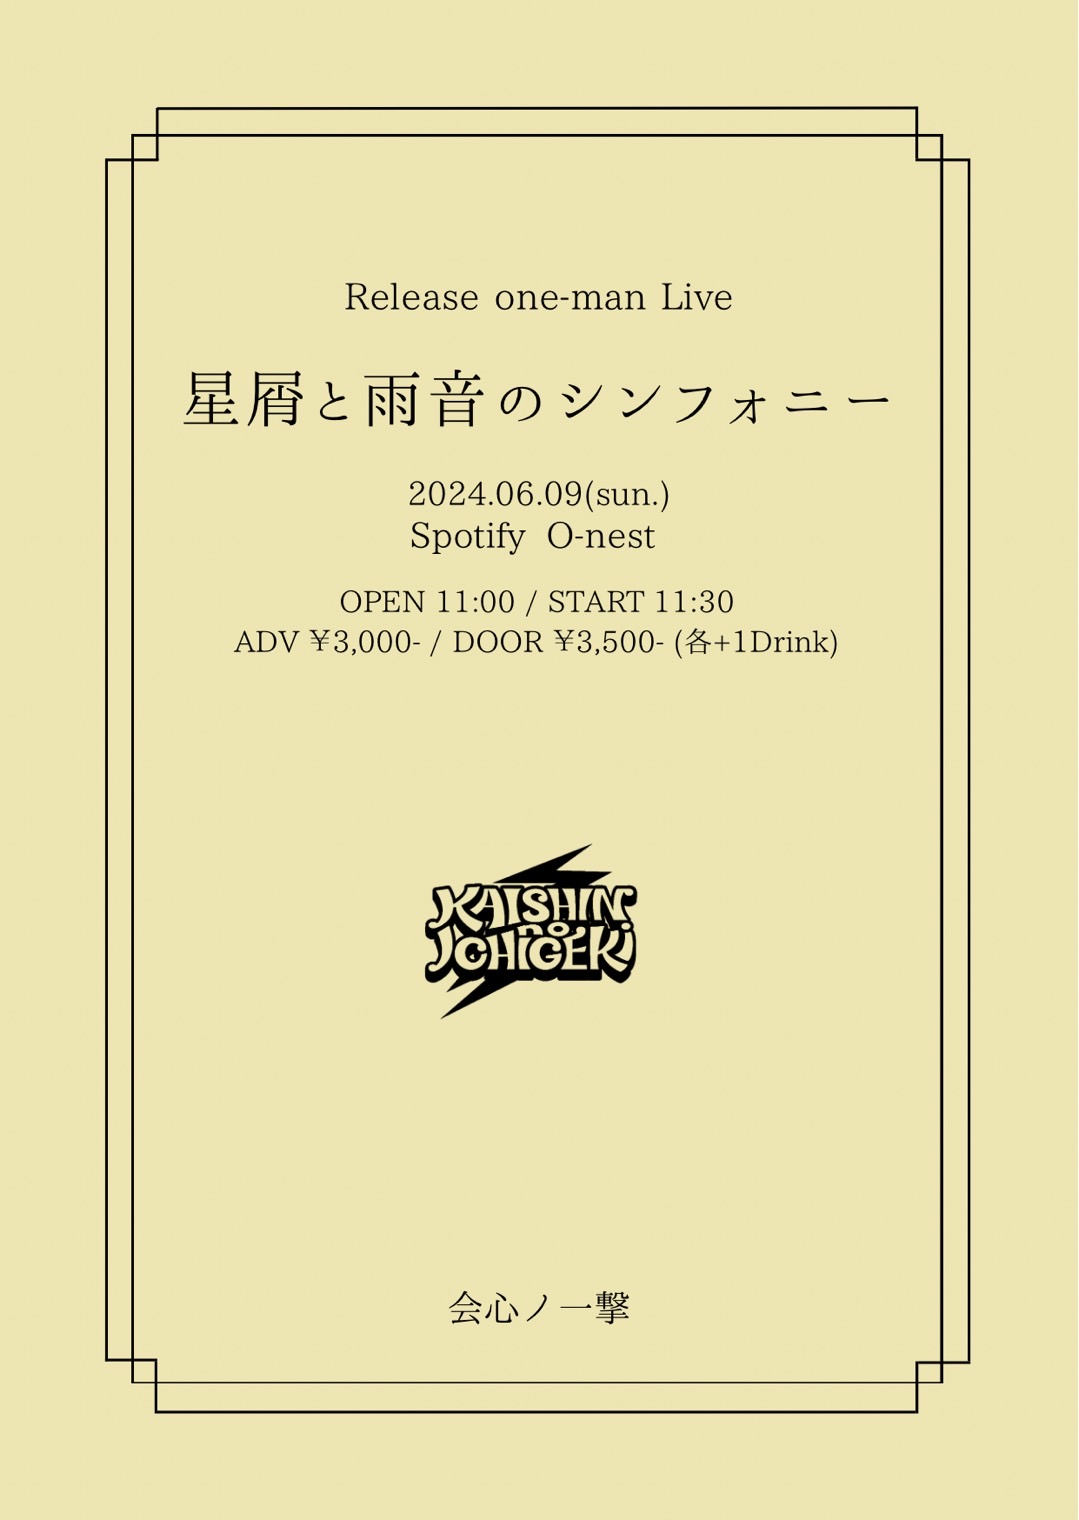 会心ノ一撃<br>3rd ALBAM『星屑と雨音のシンフォニー』<br>release 記念 1man LIVE